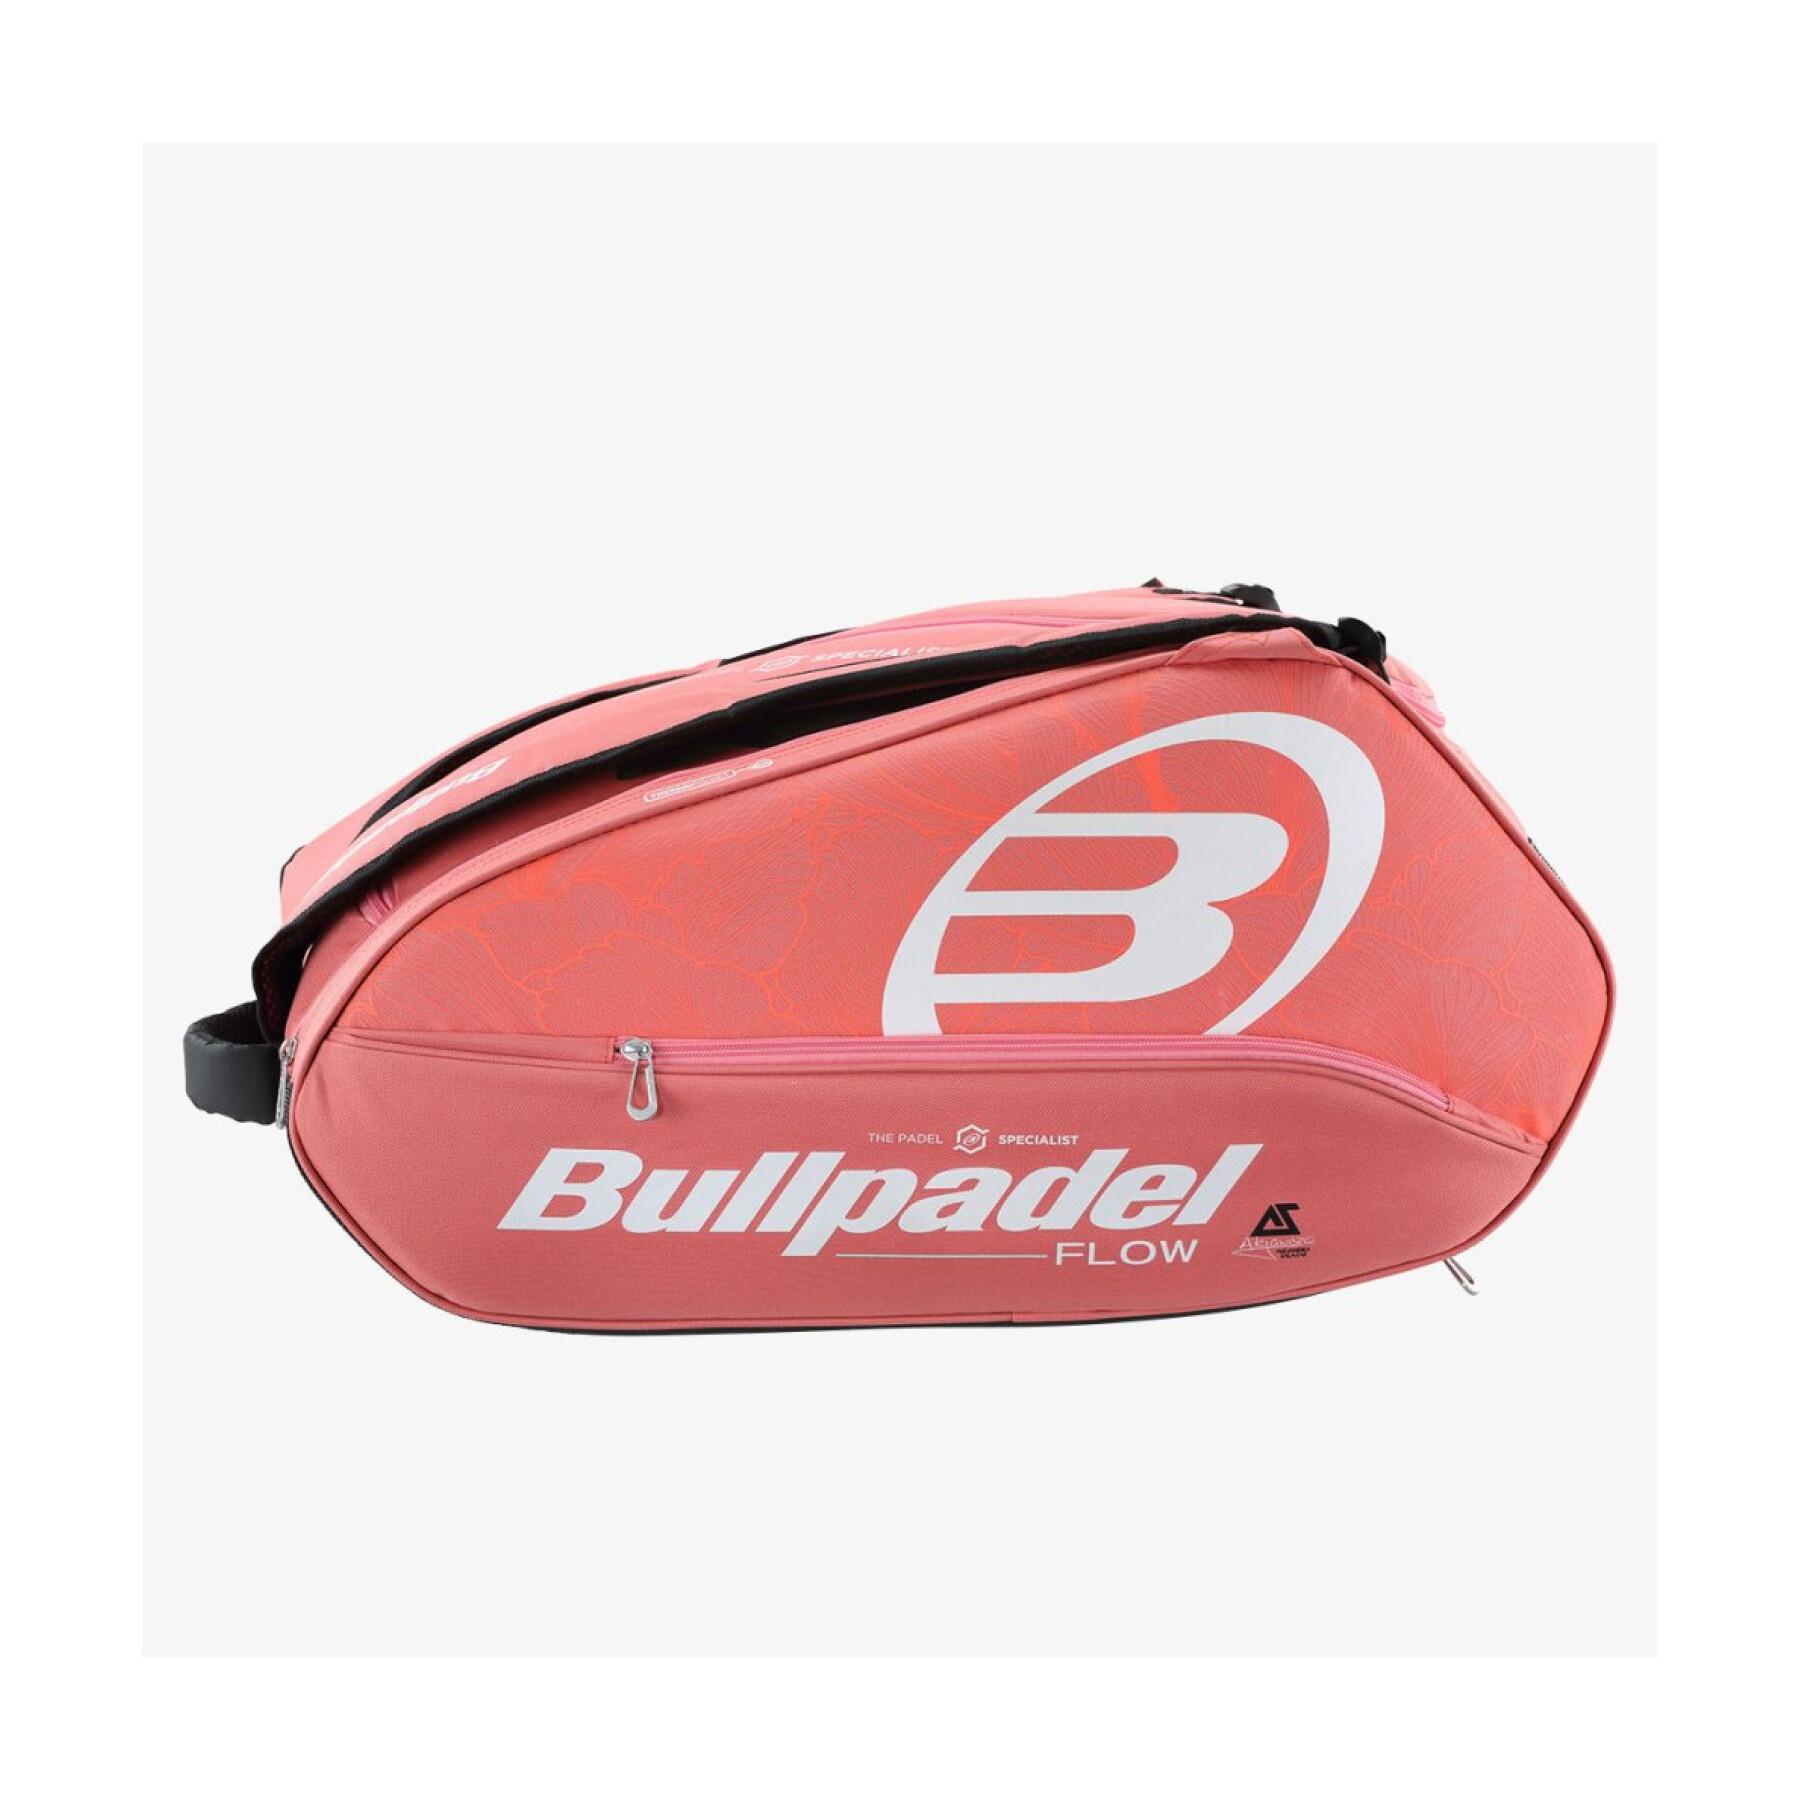 Paddle bag Bullpadel Bpp23006 Flow